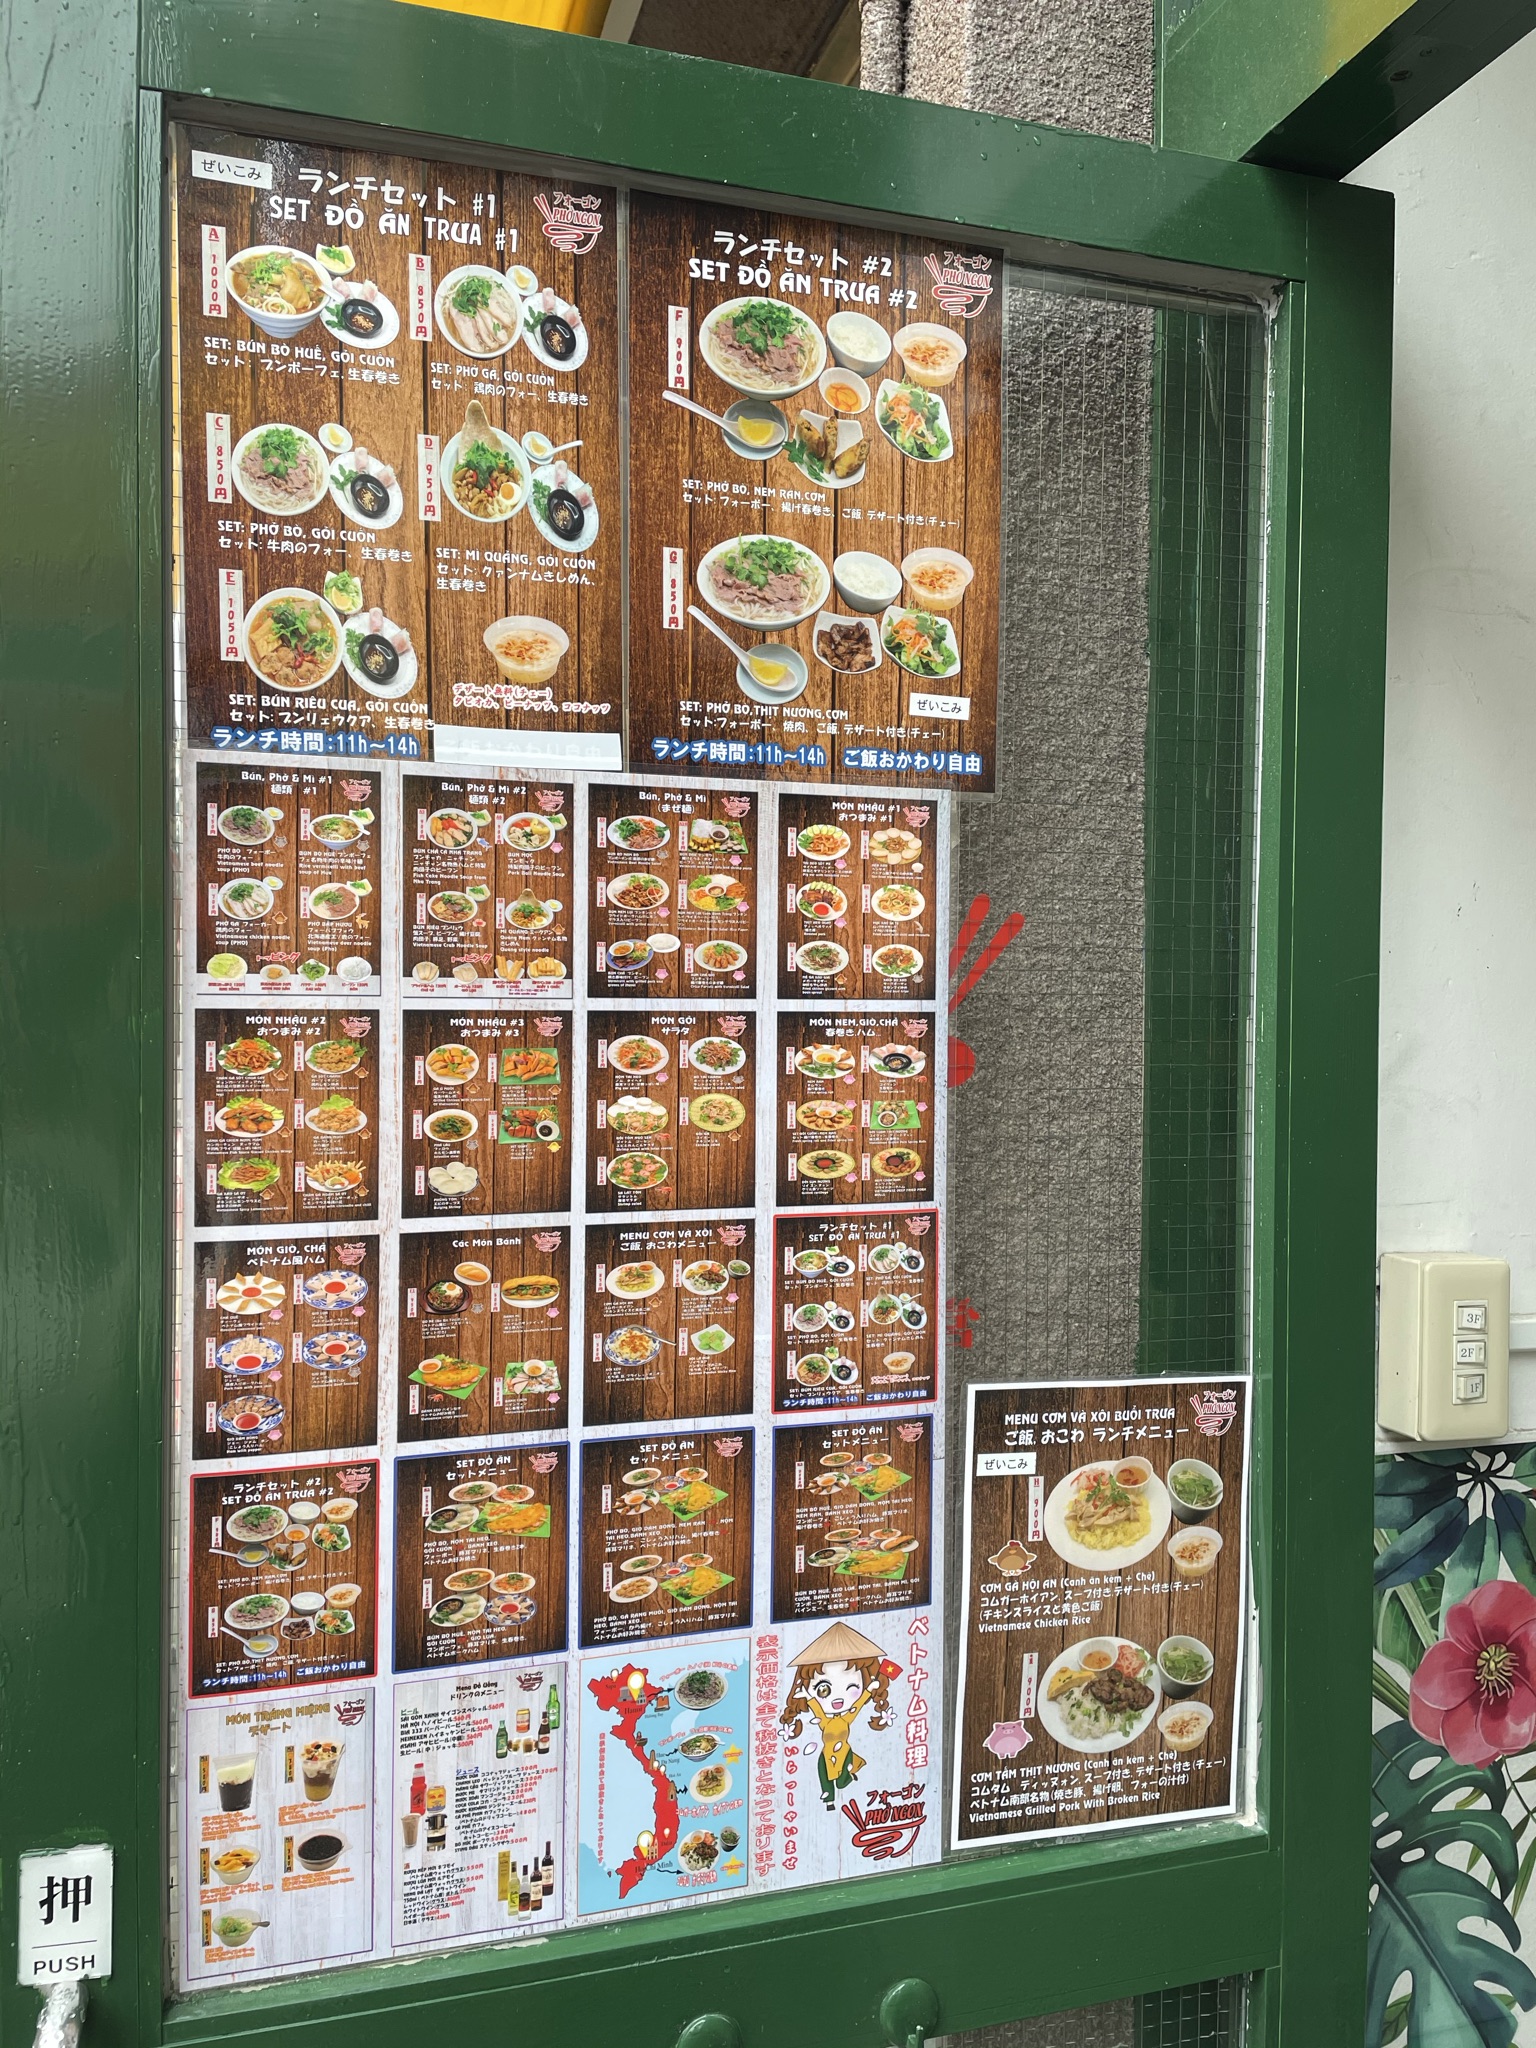 【名古屋市東区新栄】現地へプチトリップ!?ディープなベトナム料理店「フォーゴン 新栄店」